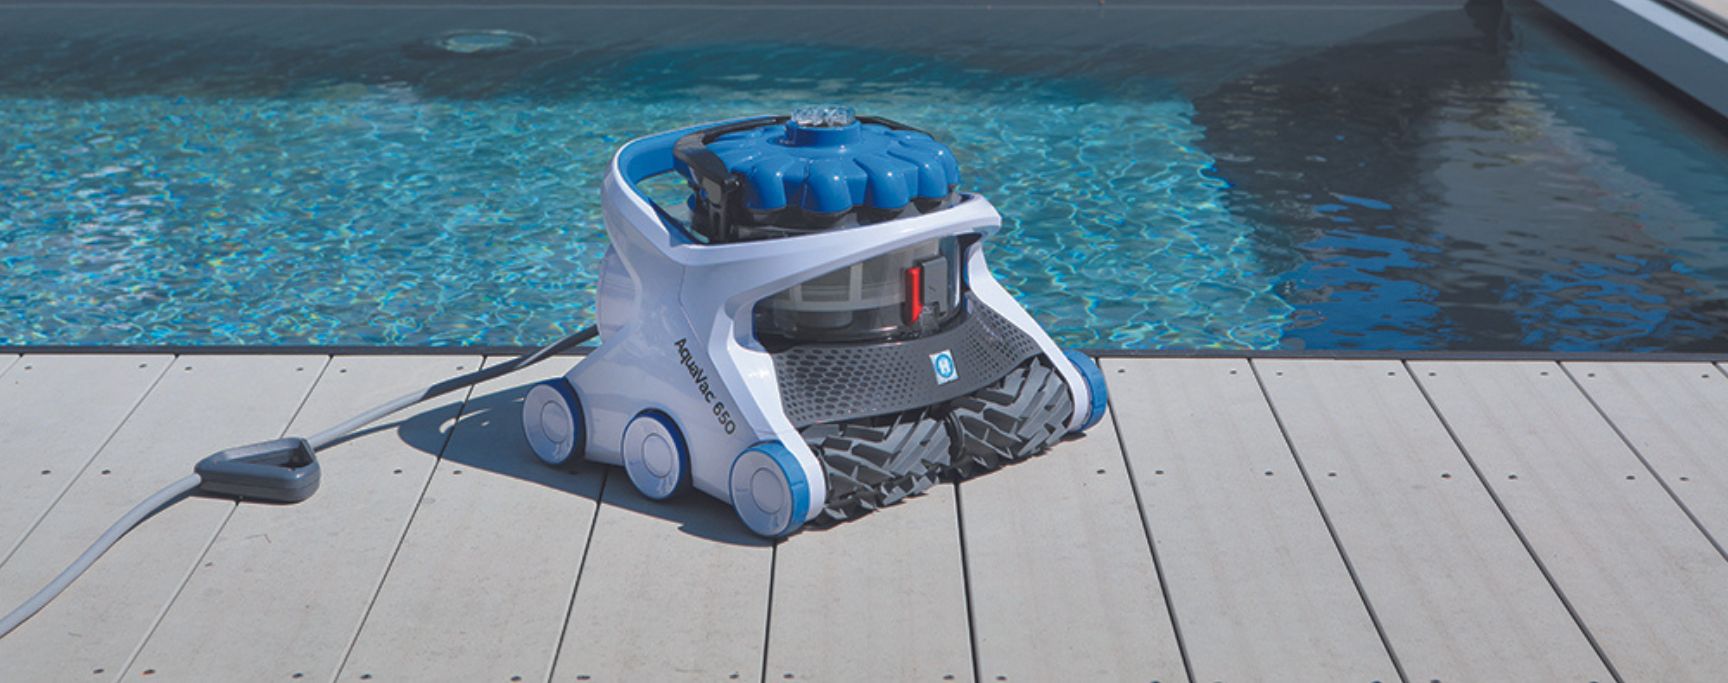 Blog robot piscine : tout sur votre robot nettoyeur de piscine